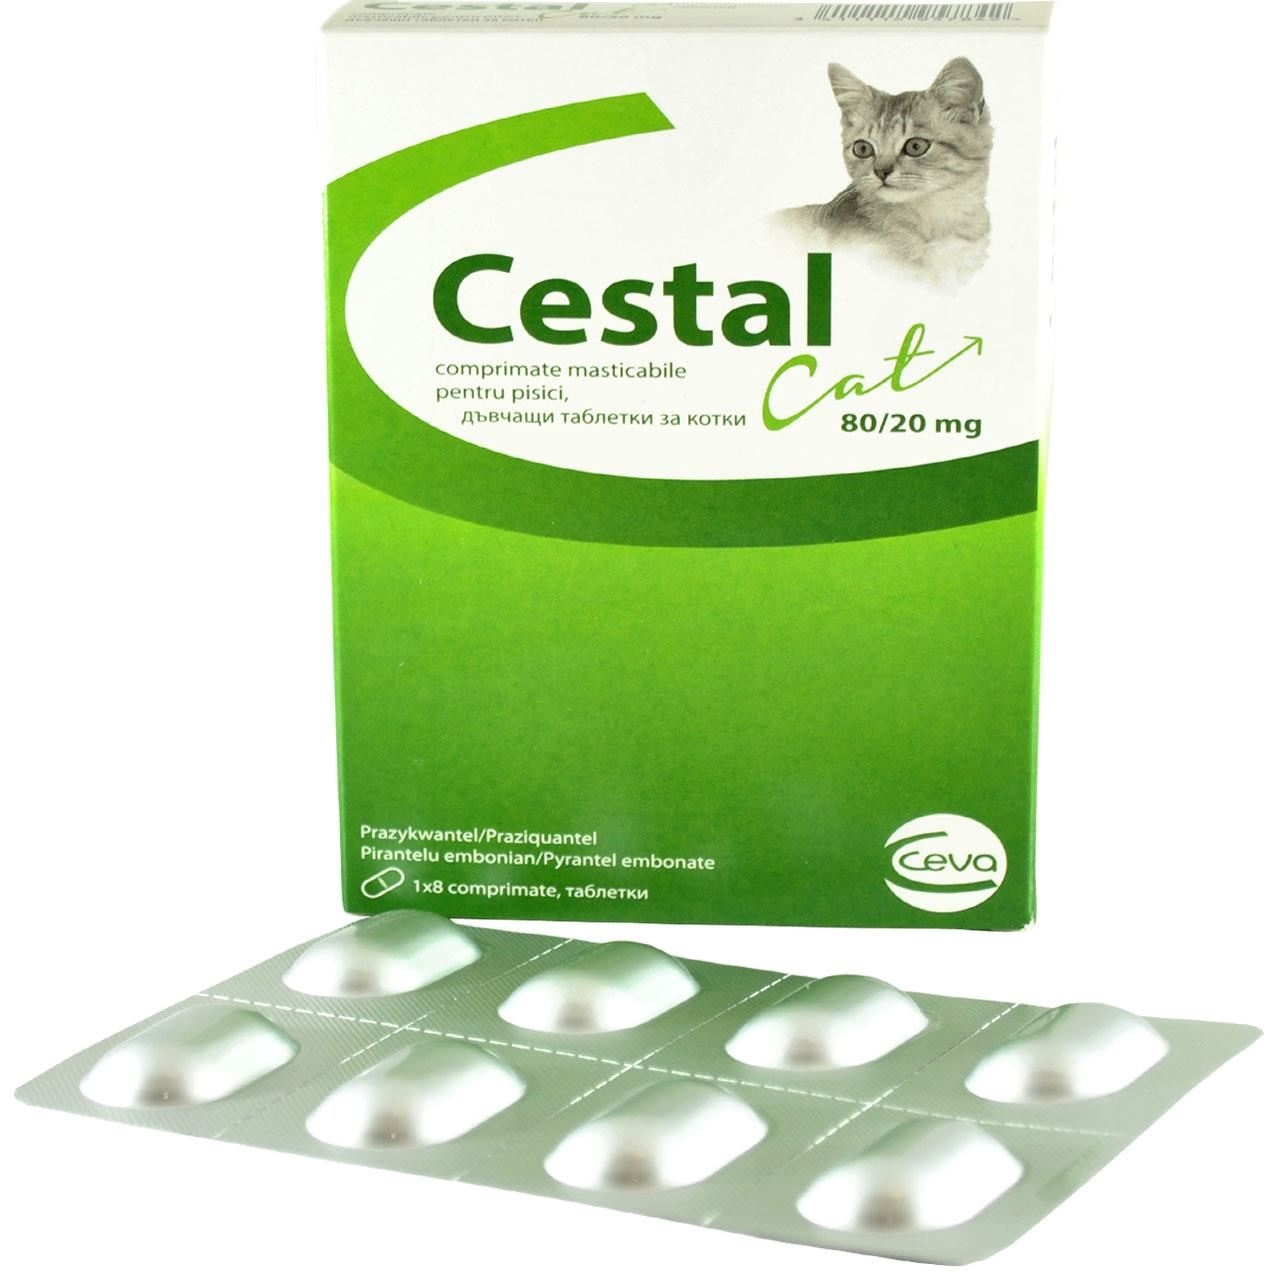 Cestal Cat Chew, 8 tablete masticabile antiparazitar intern pentru pisici Ceva Sante